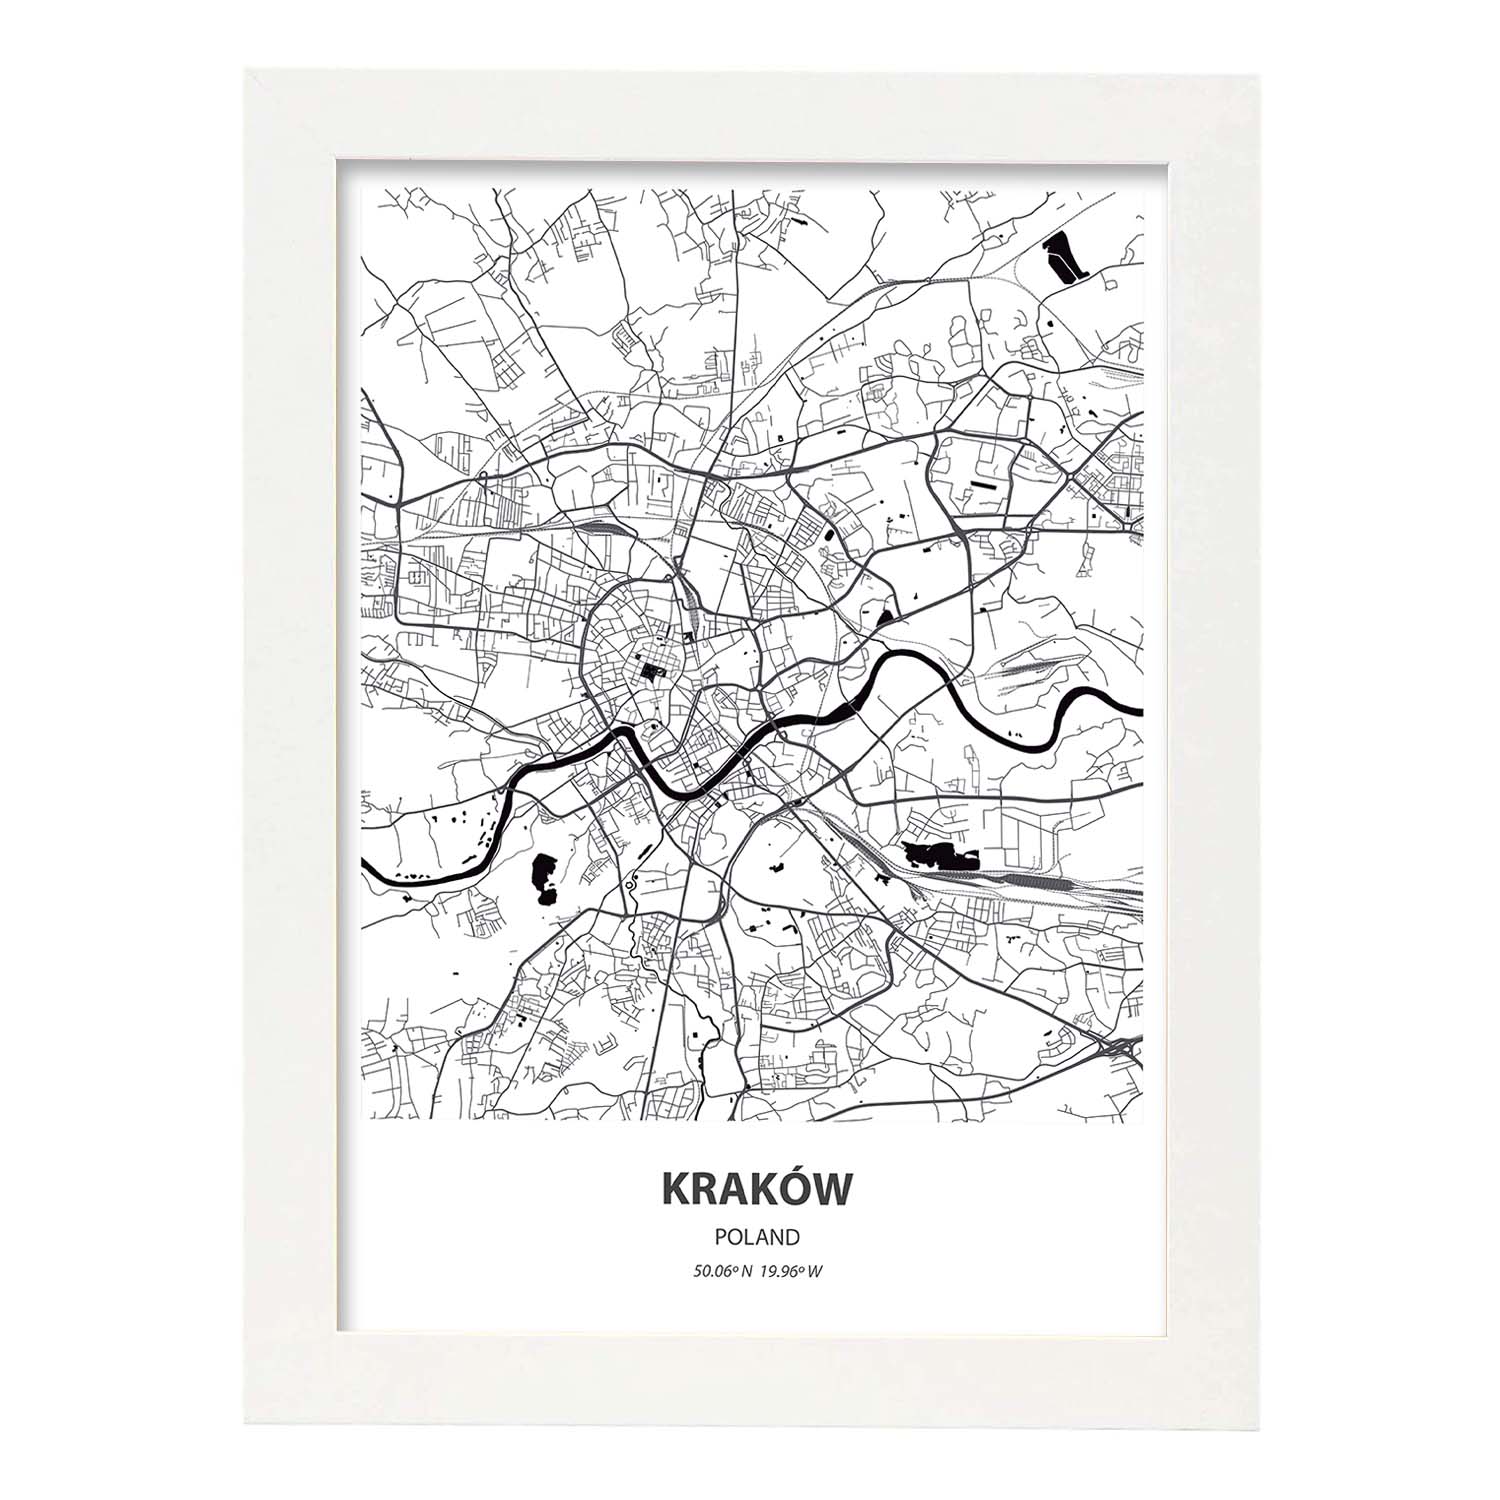 Poster con mapa de Krakow - Polonia. Láminas de ciudades de Europa con mares y ríos en color negro.-Artwork-Nacnic-A3-Marco Blanco-Nacnic Estudio SL